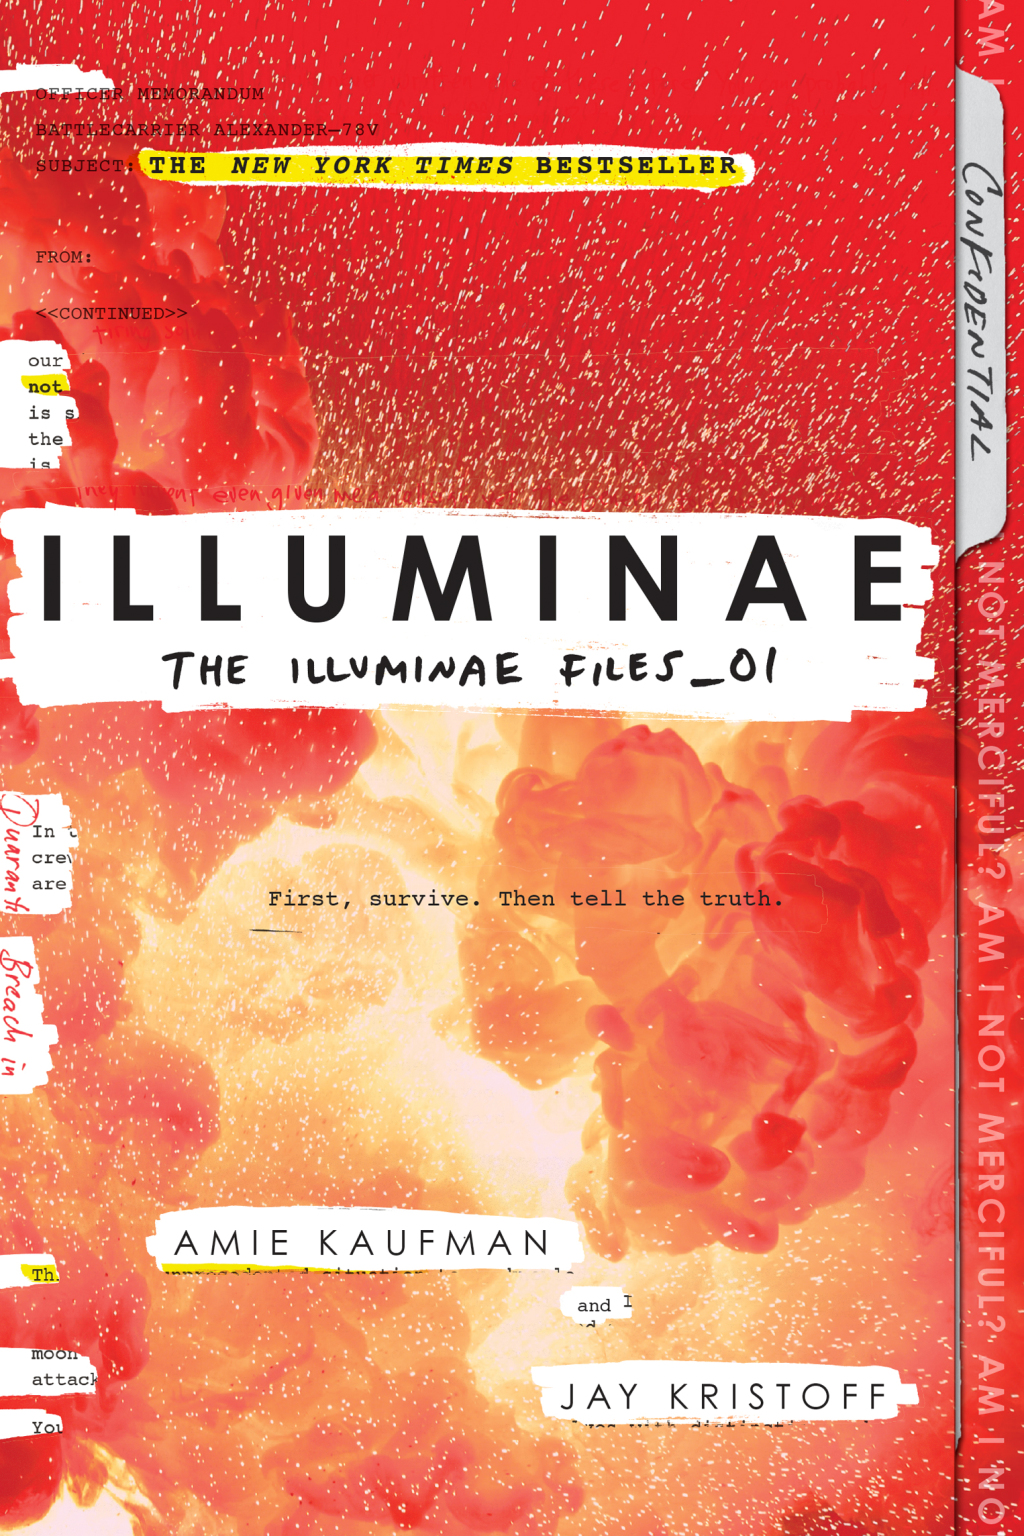 Illuminae (eBook) - Amie Kaufman; Jay Kristoff,